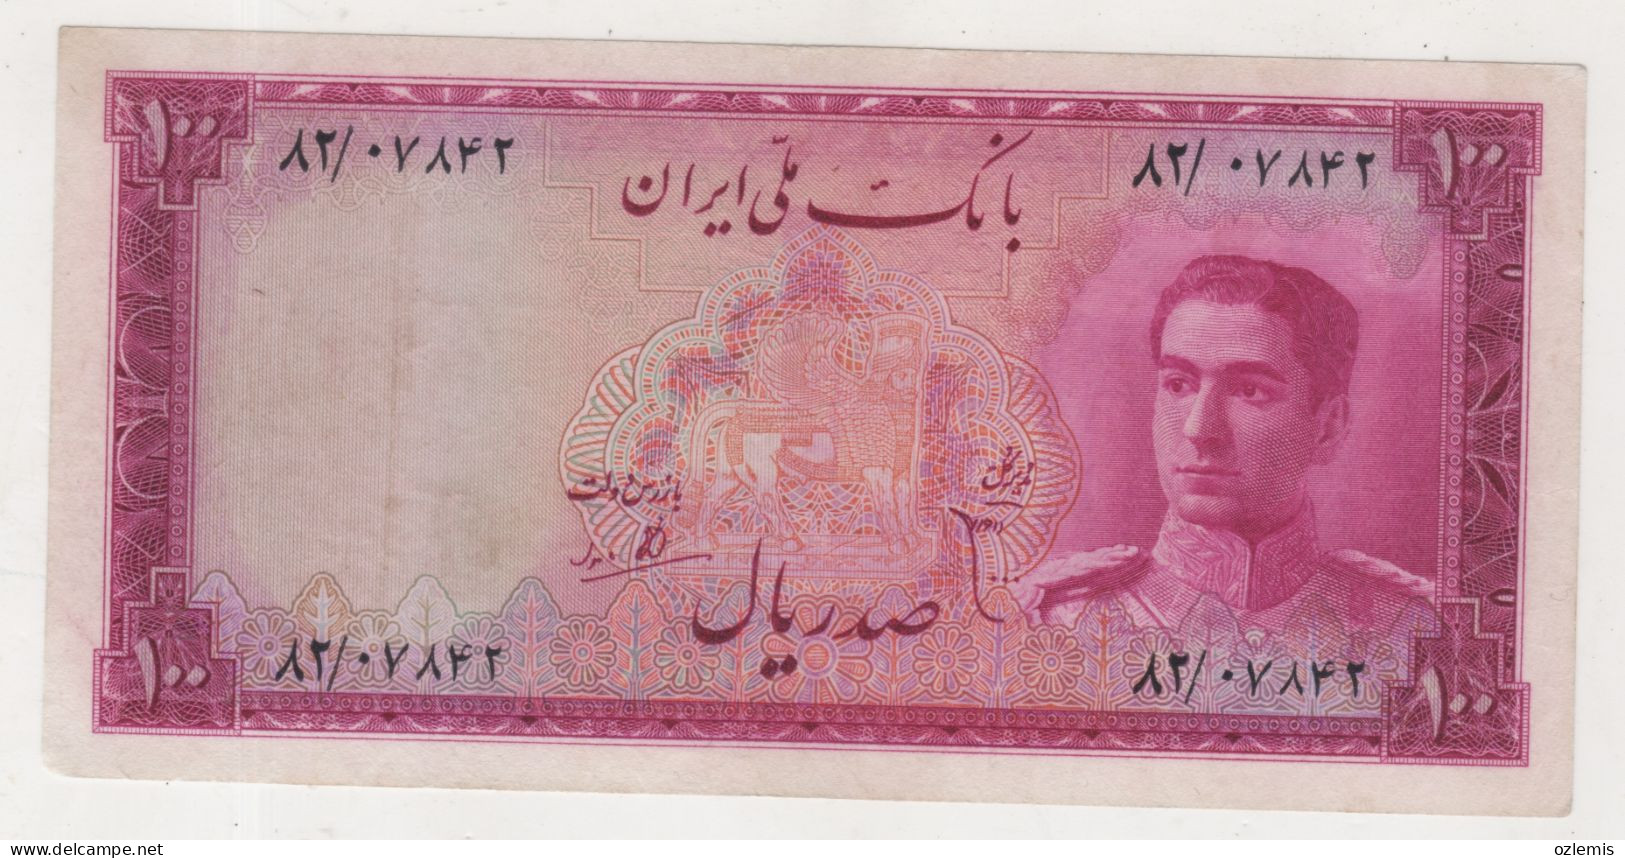 IRAN: 1951 ,100 RIALS , BANKNOTE, VVF - Iran